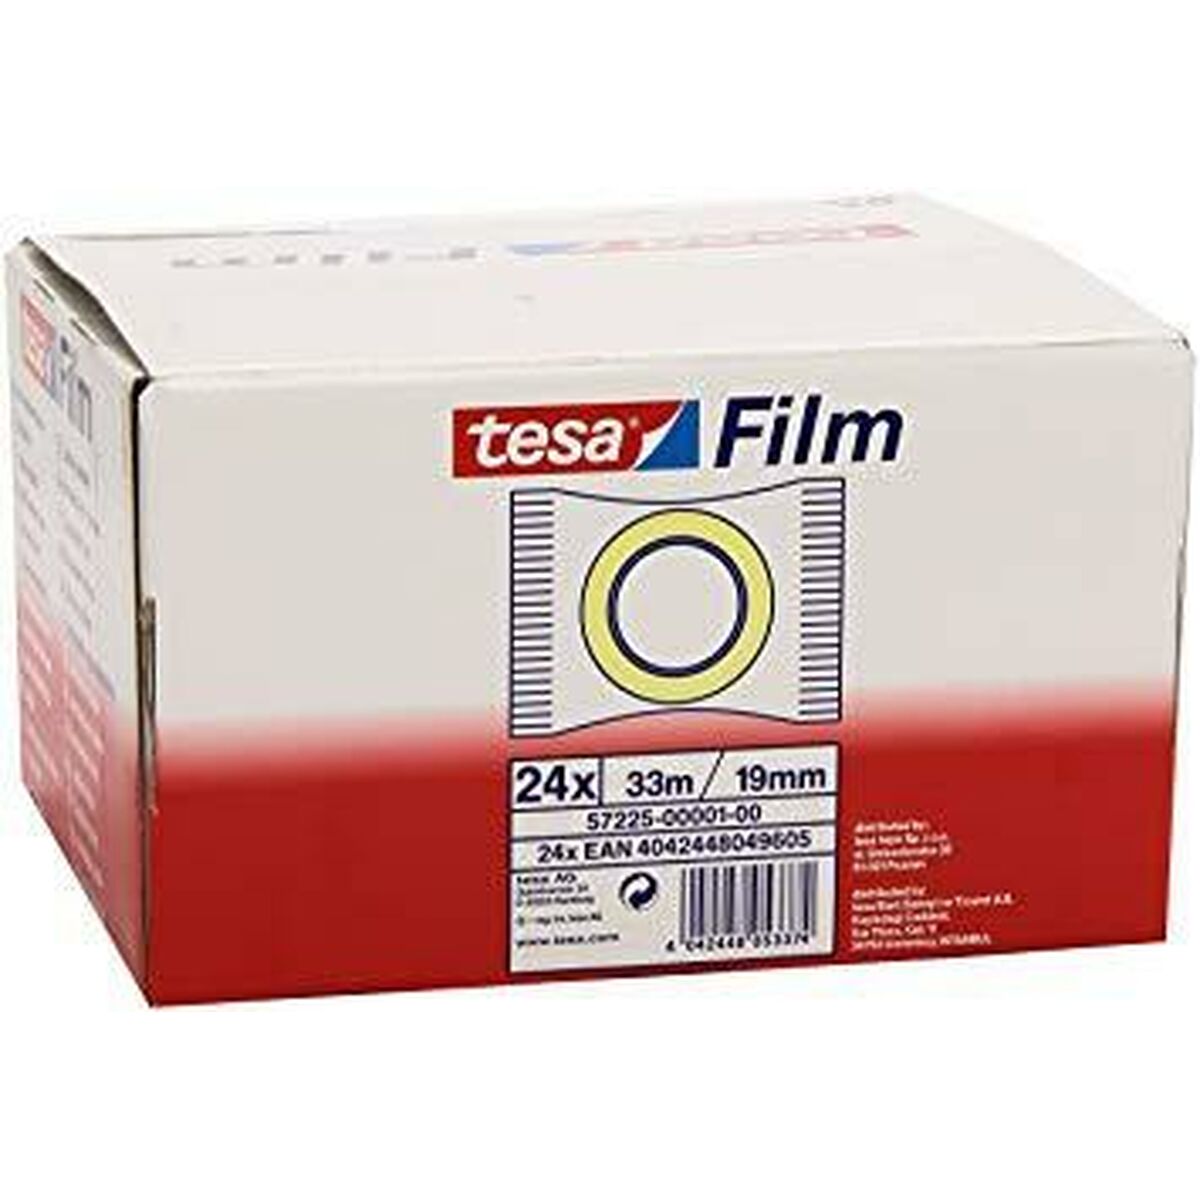 Självhäftande band TESA 19 mm 33 m Transparent (24 antal)-Kontor och Kontorsmaterial, Kontorsmaterial-TESA-peaceofhome.se